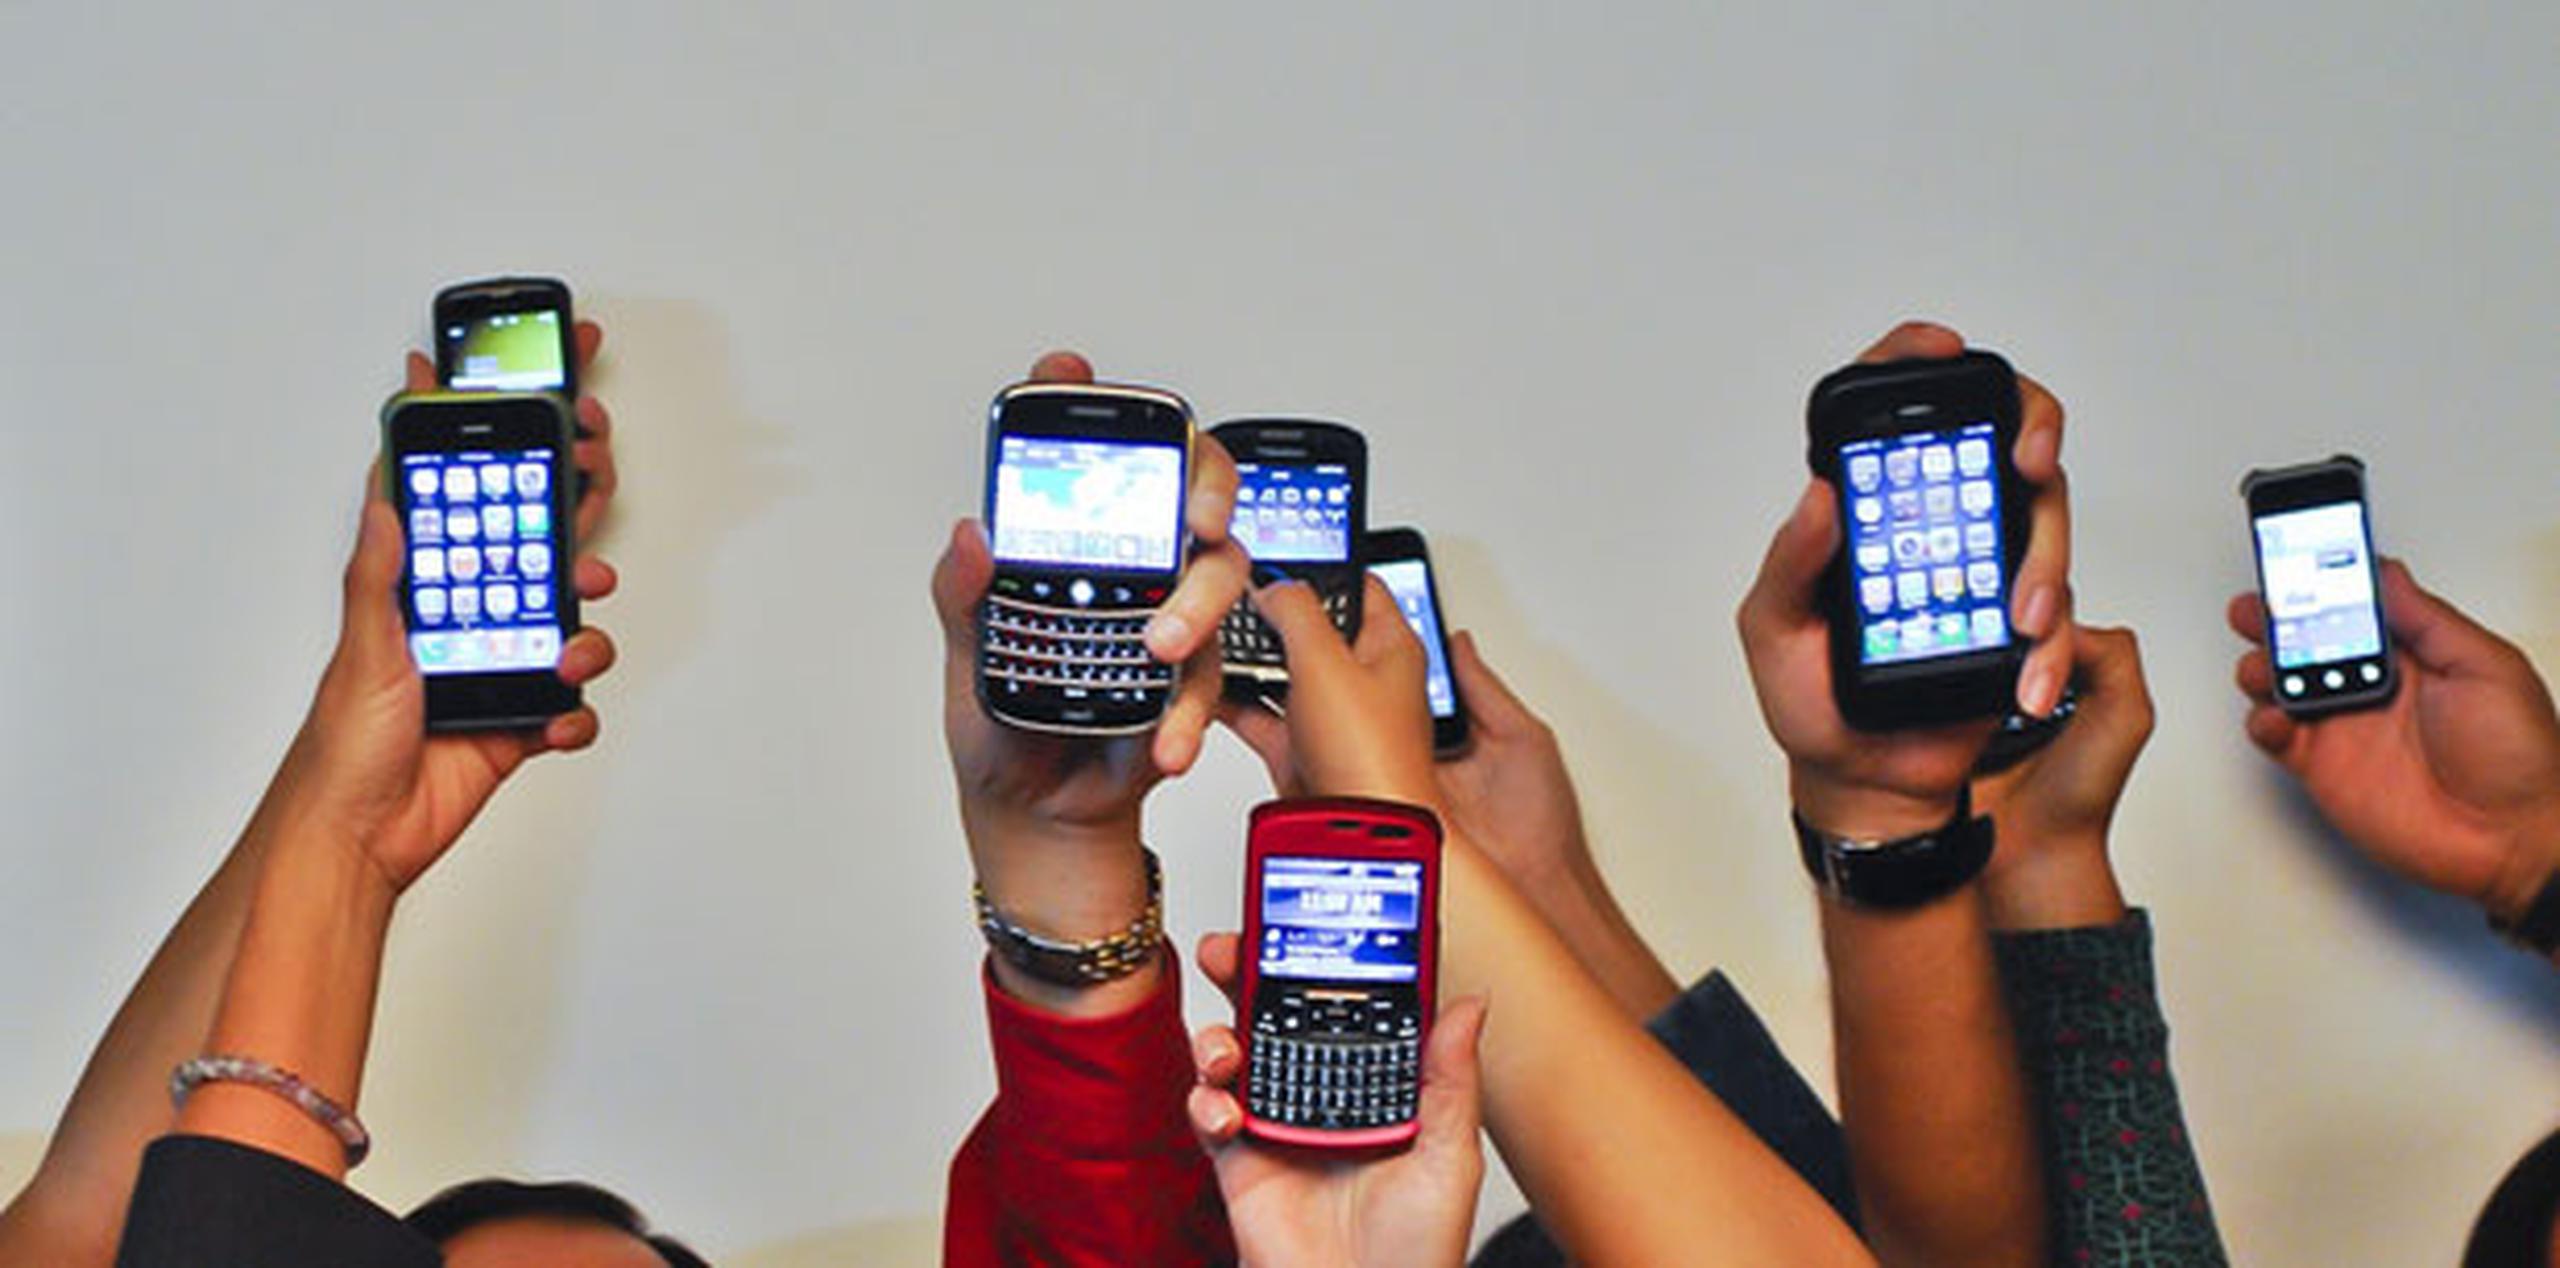 Aproximadamente el 81% de los adultos estadounidenses usan un celular regularmente, y el número de usuarios creció en más de 20 millones el año pasado. (Archivo)